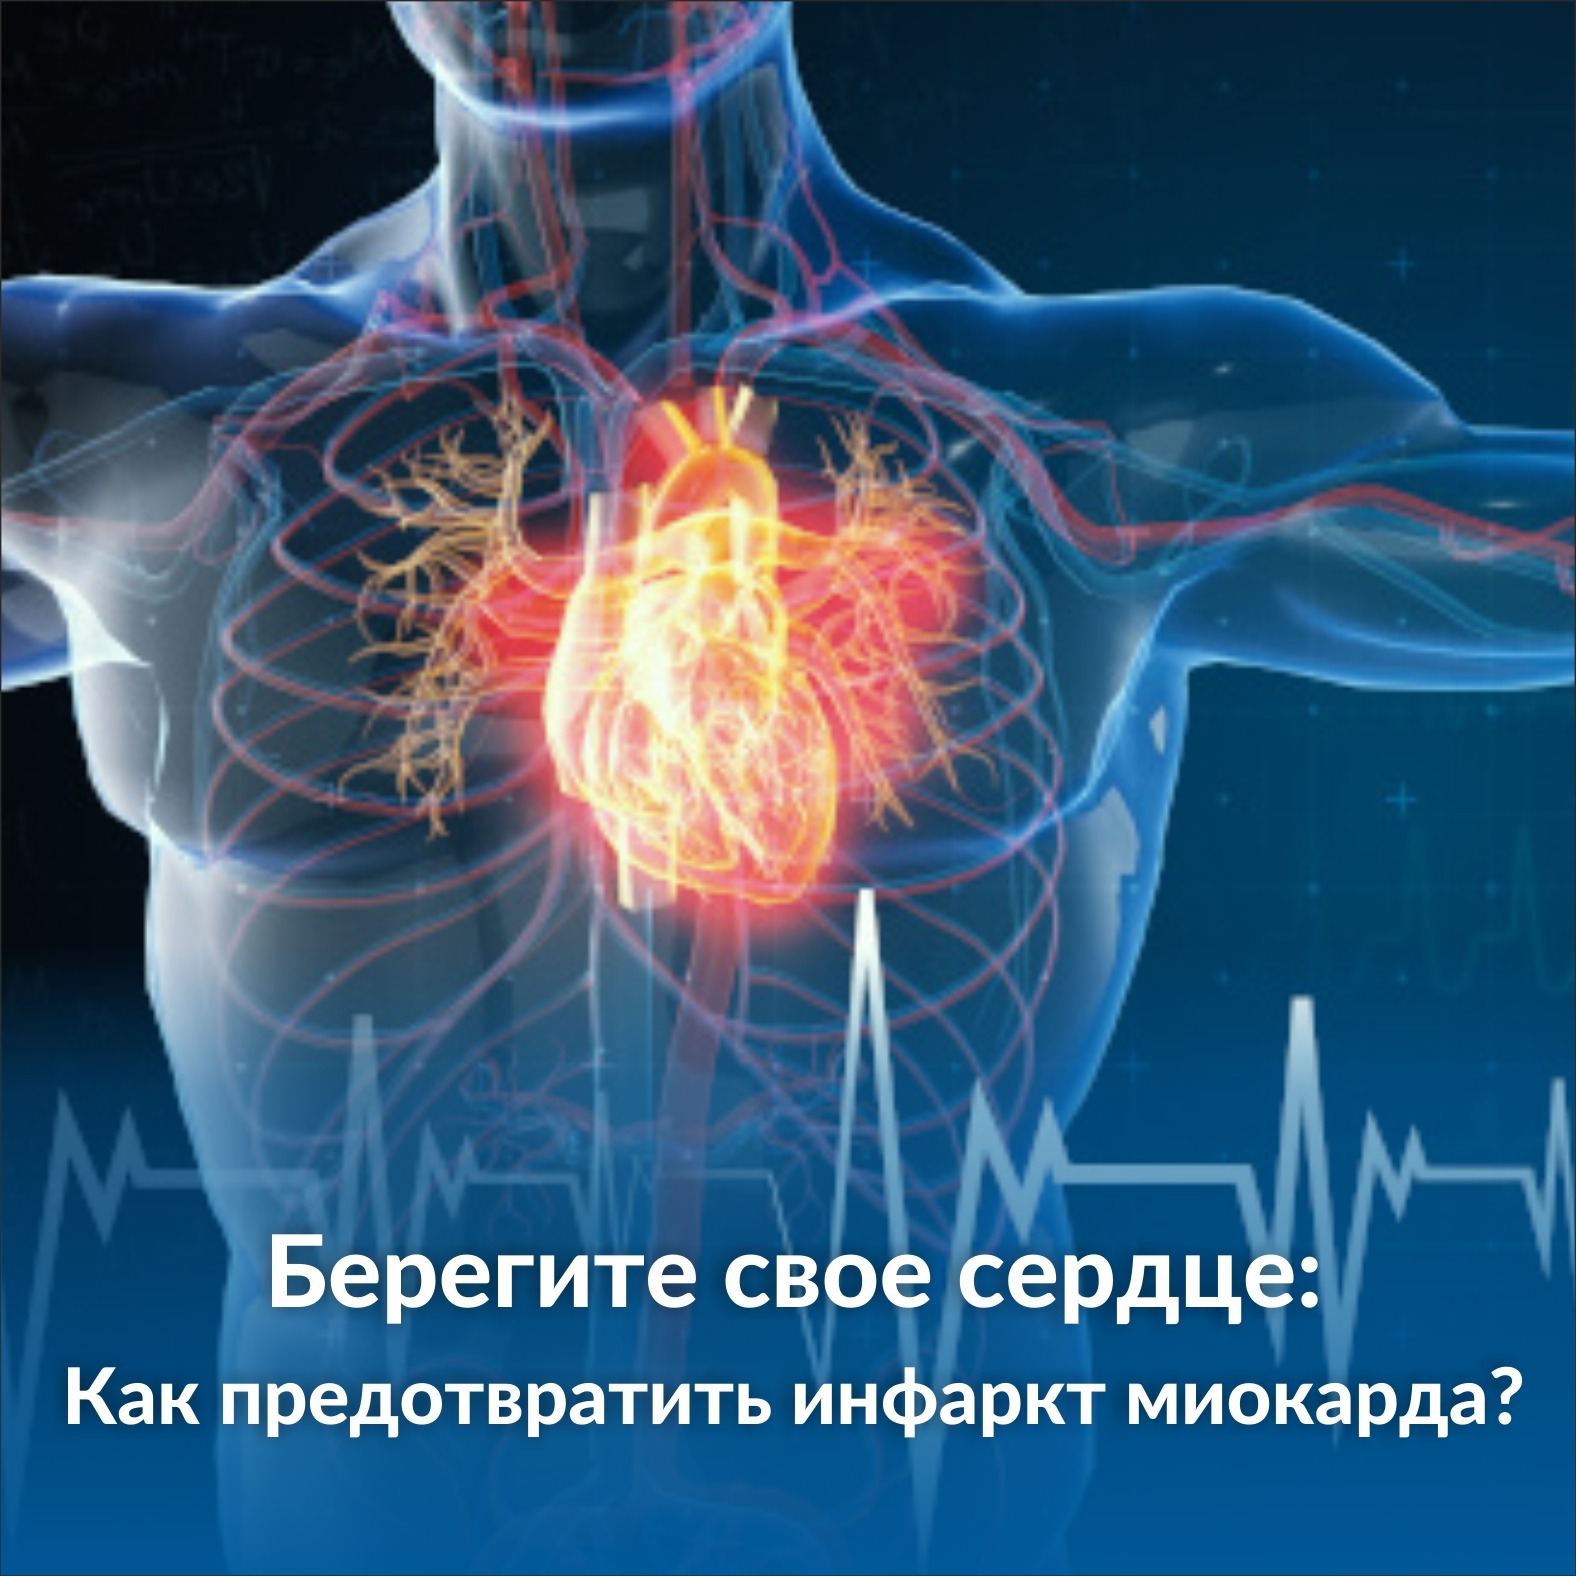 «Берегите свое сердце: Как предотвратить инфаркт миокарда?»